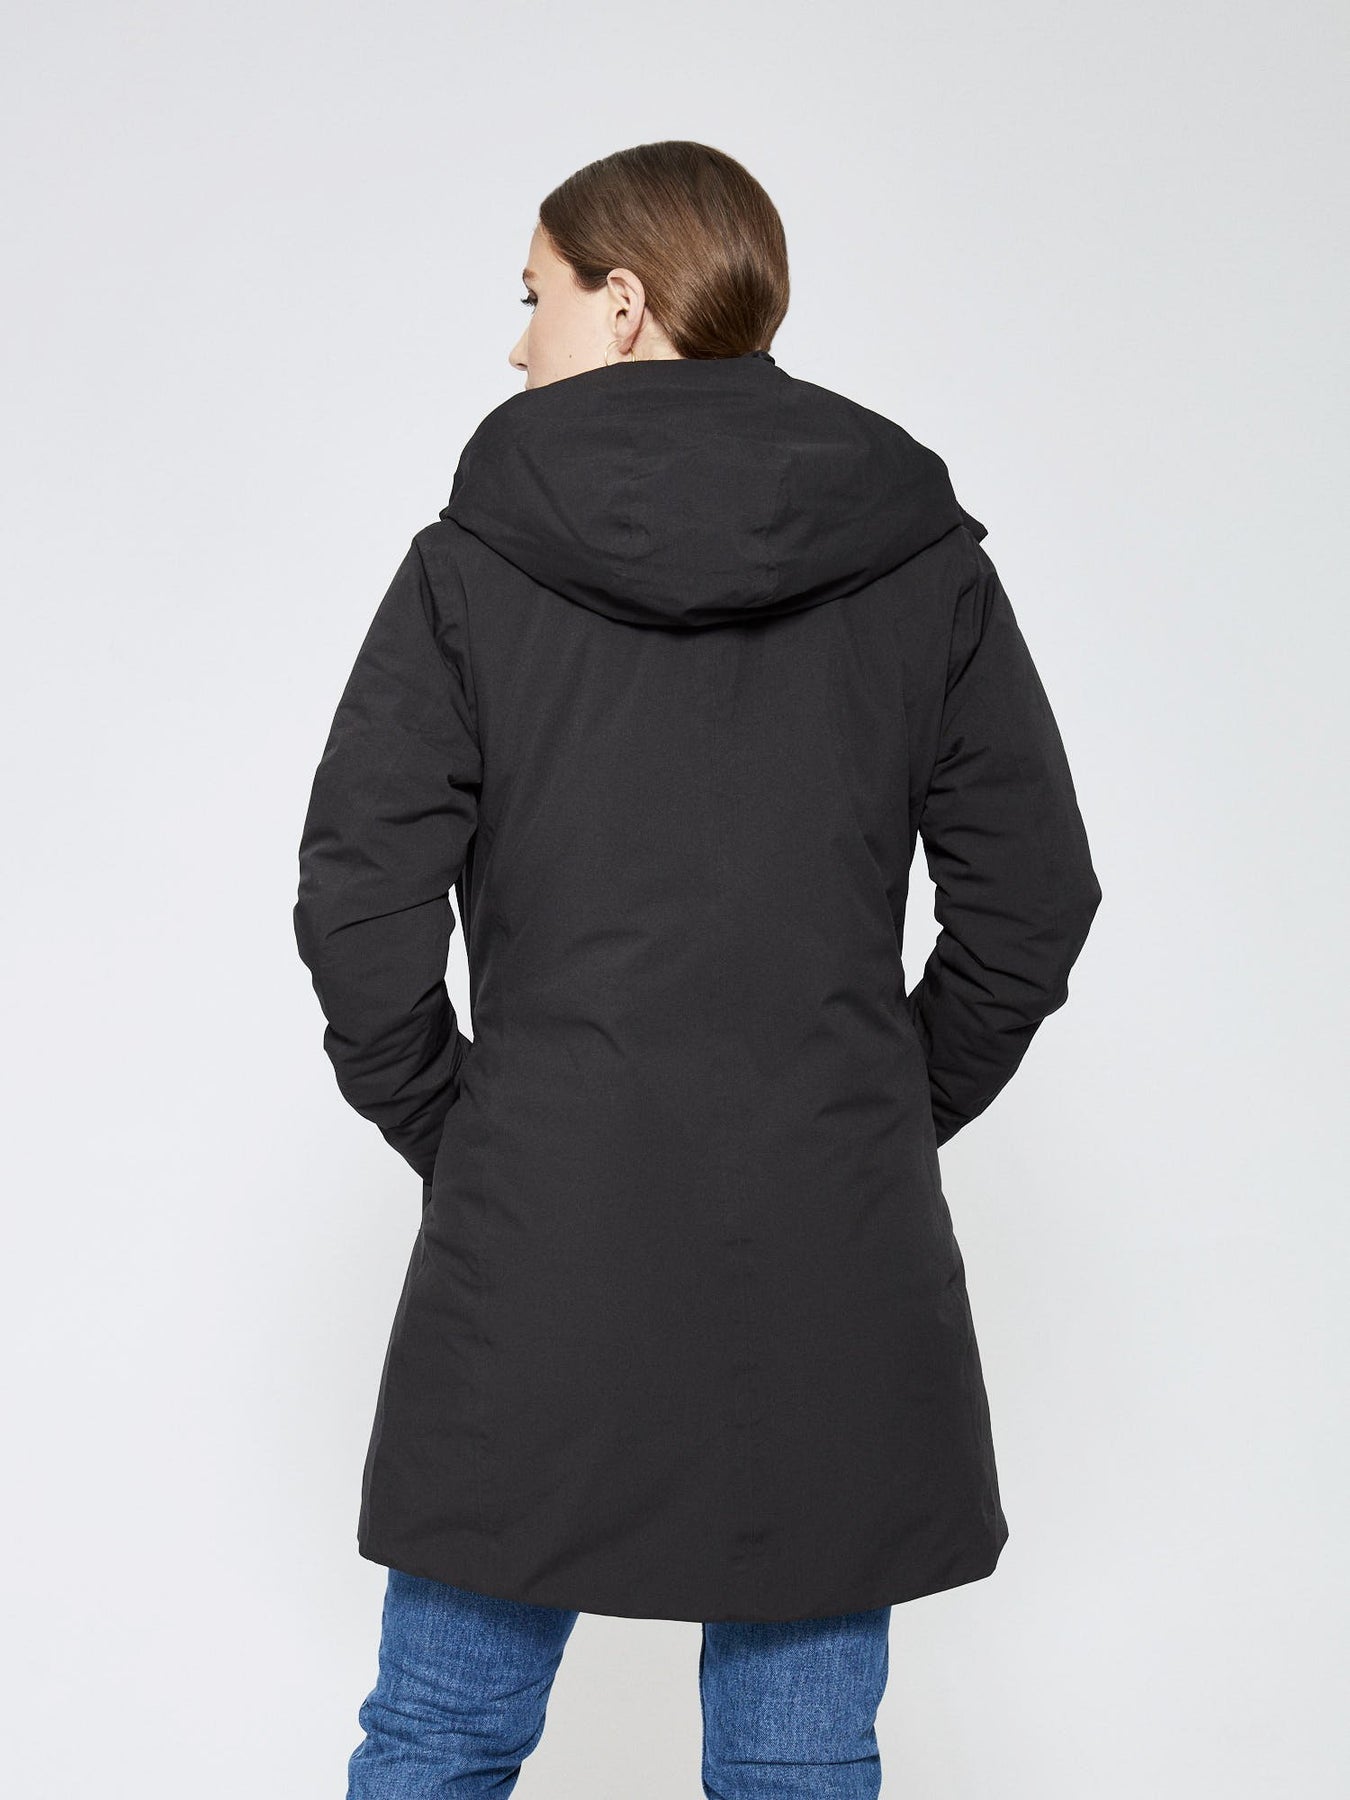 Women Coat - Black - Scandinavian Edition - Jakker - VILLOID.no